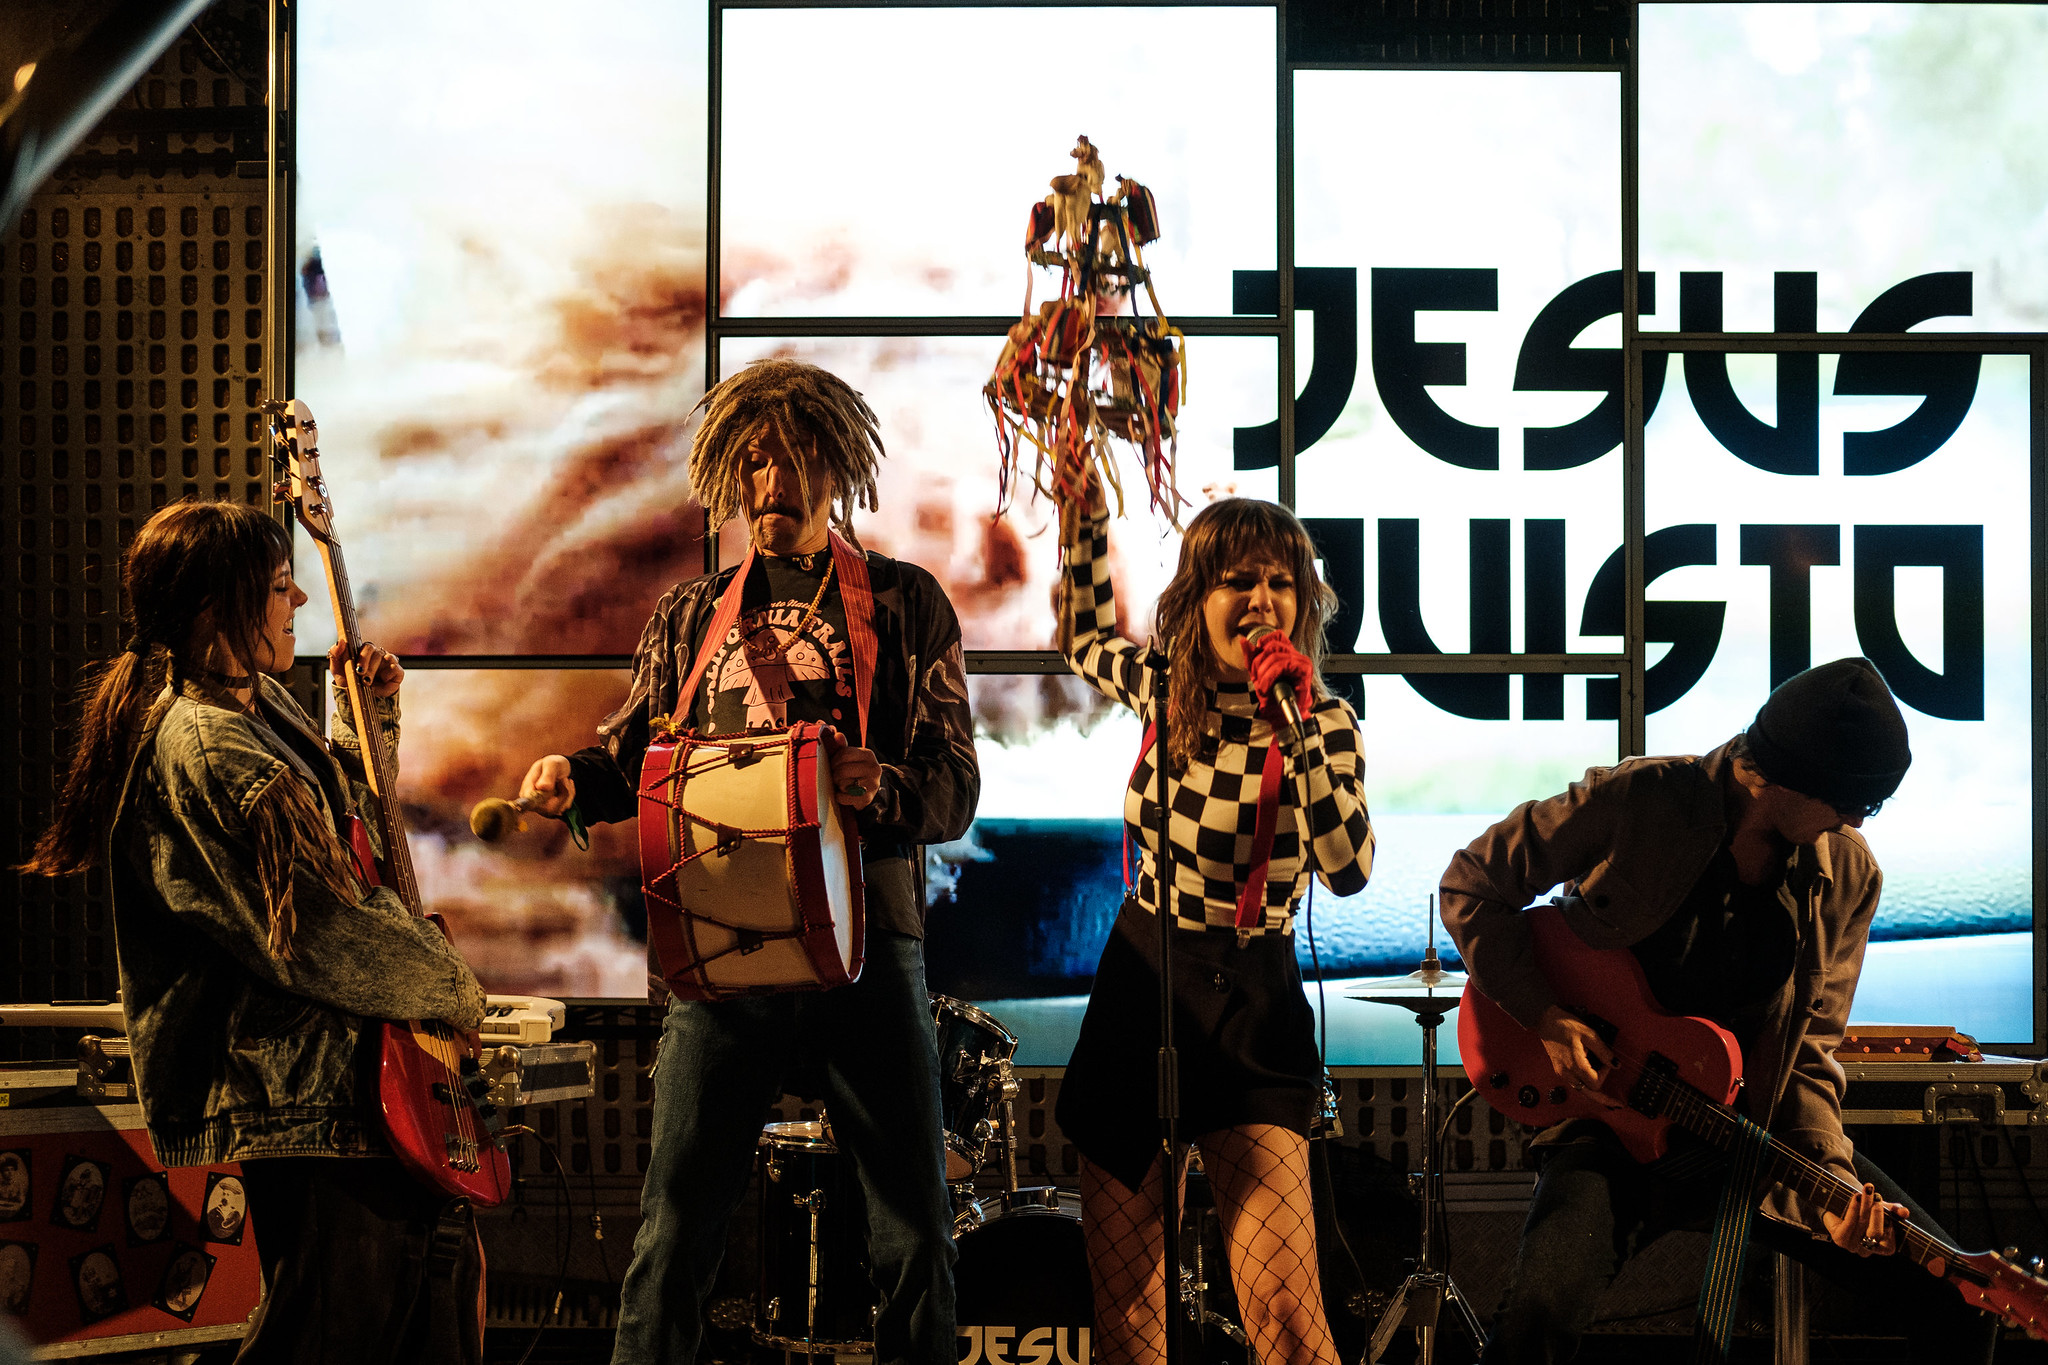 Banda Jesus Quisto da série “Pôr do Sol” actua nos coliseus de Lisboa e Porto